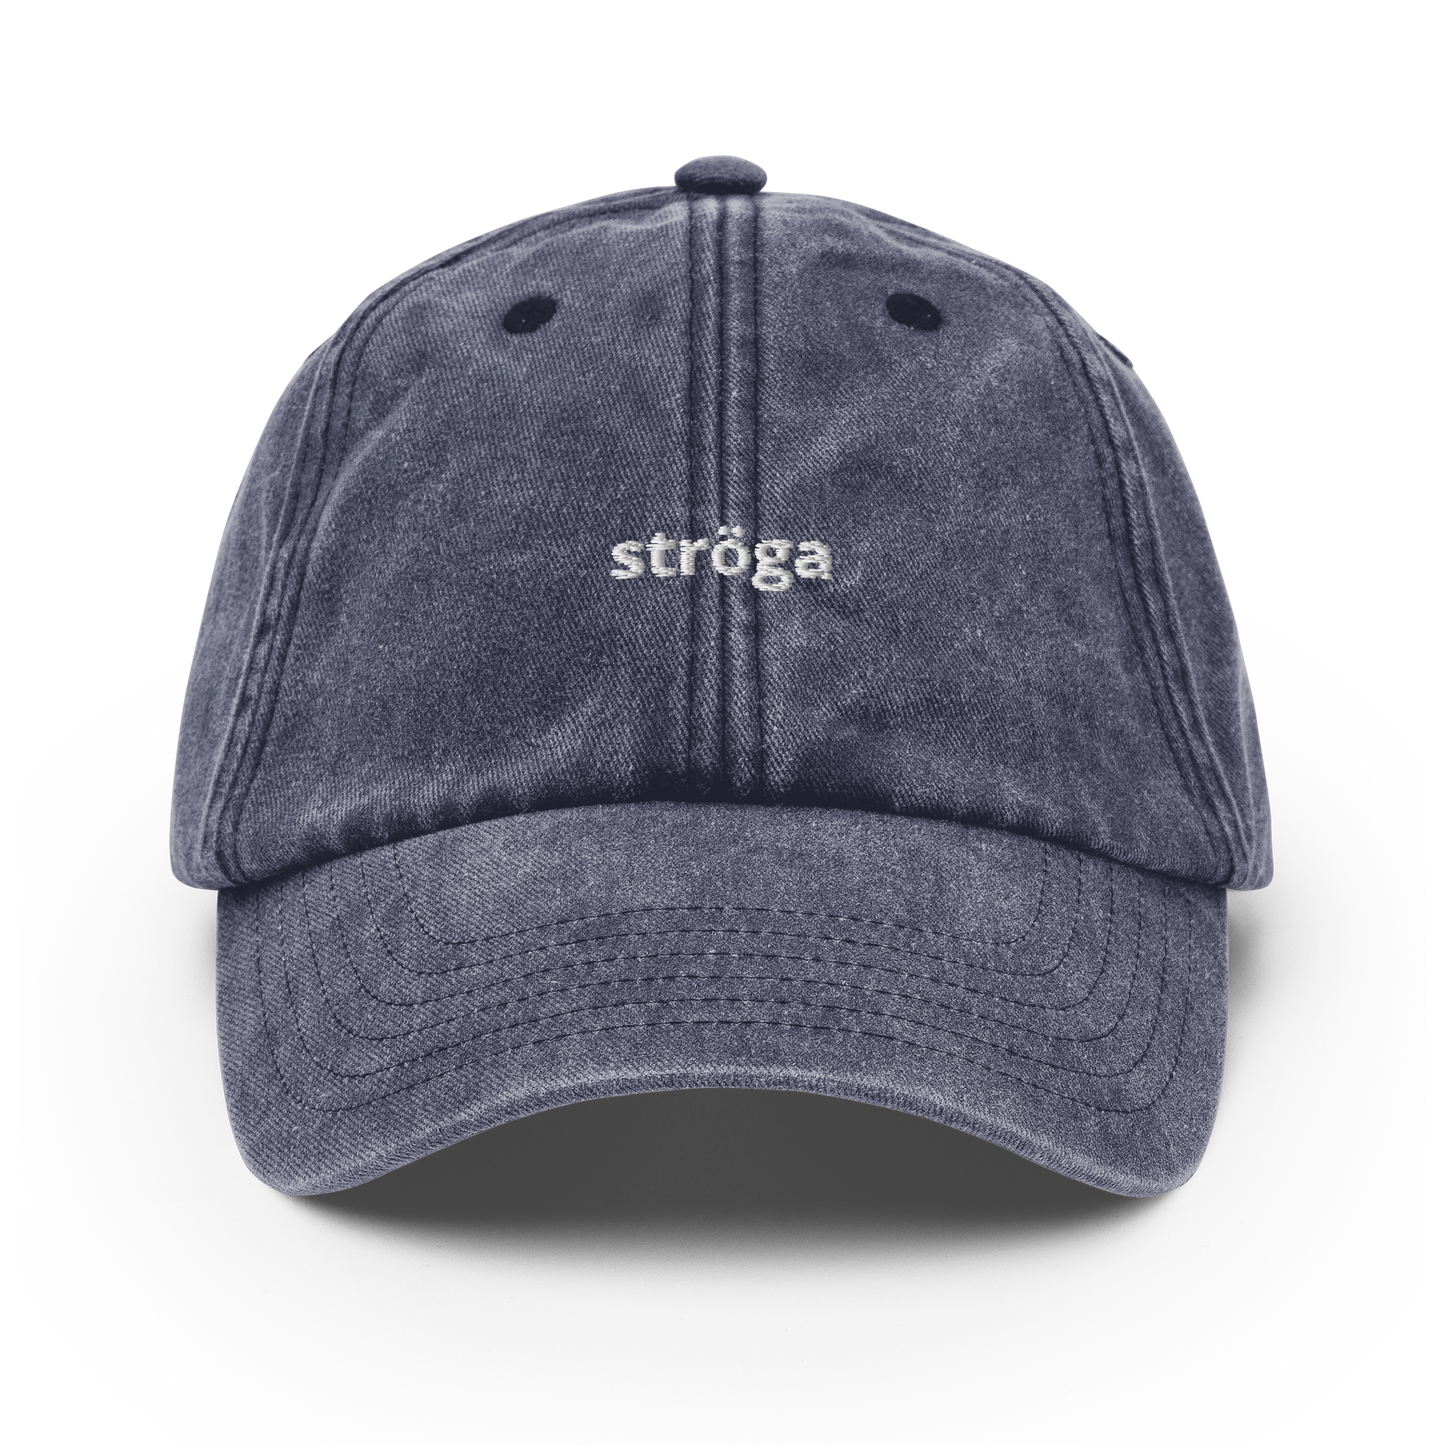 Ströga - Vintage Hat